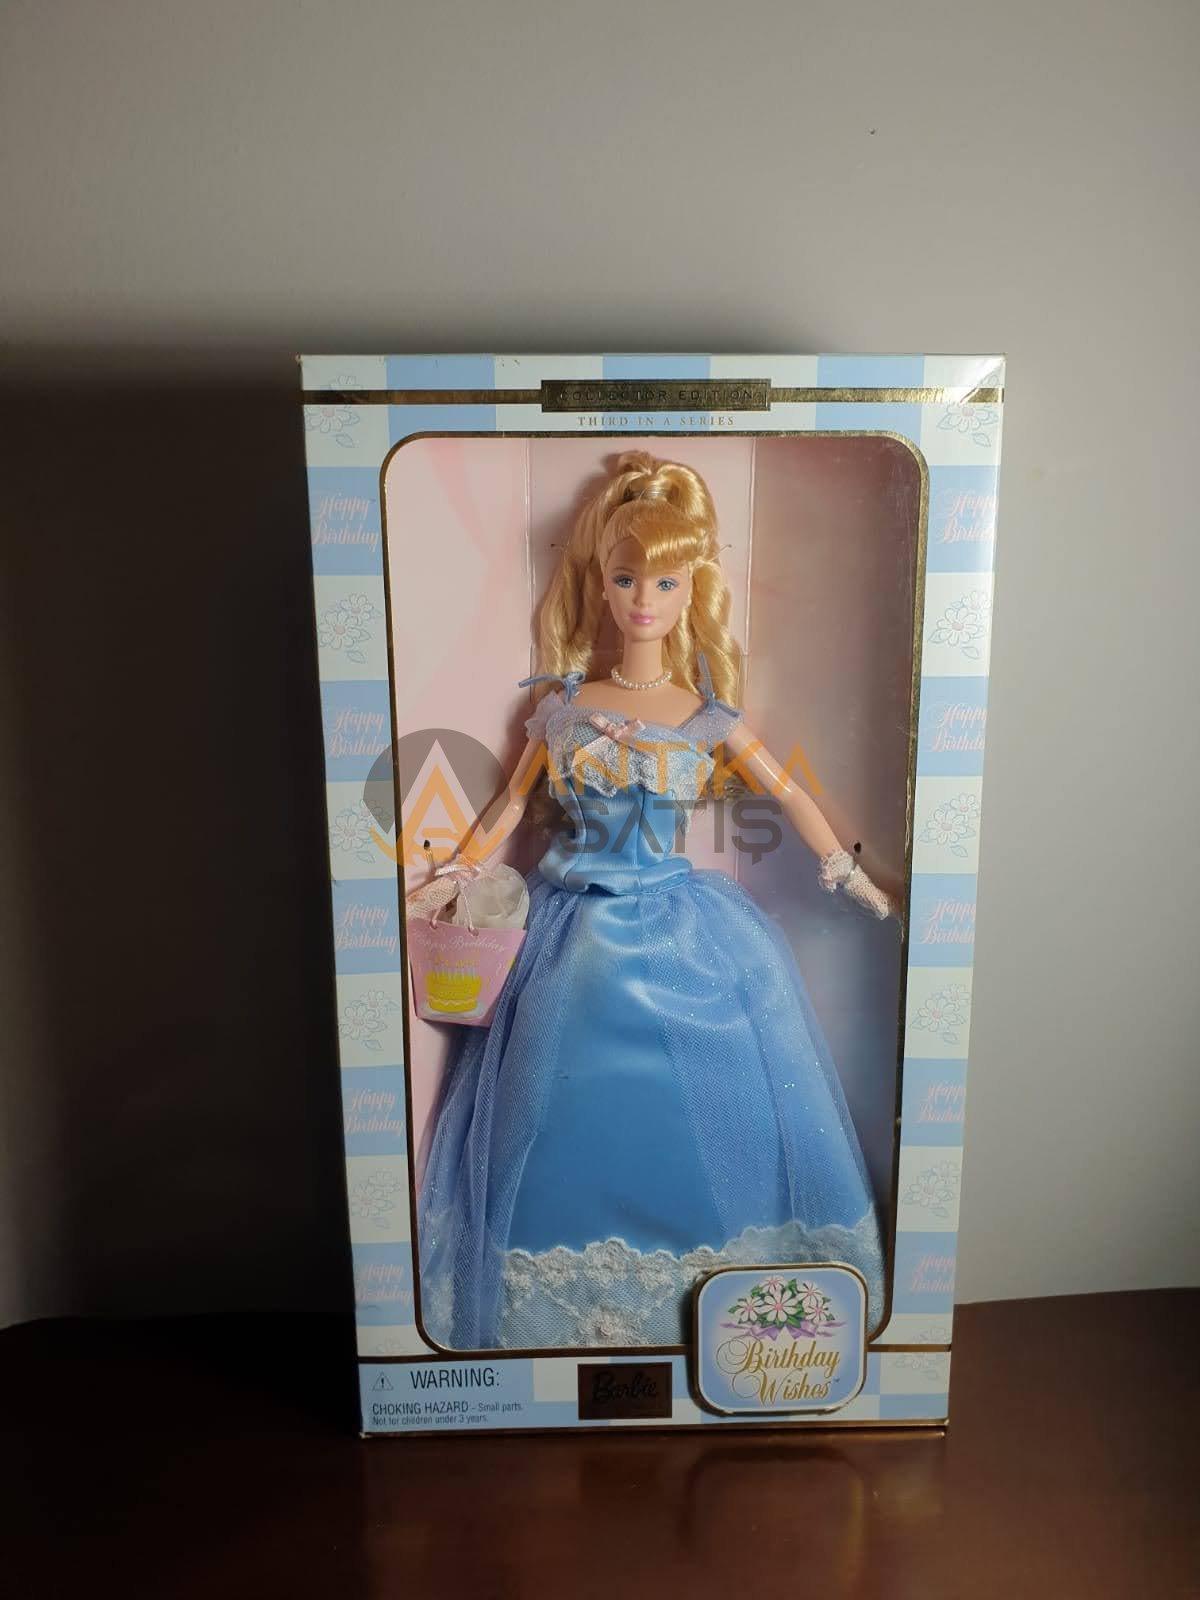 2001 Birthday Wishes Barbie